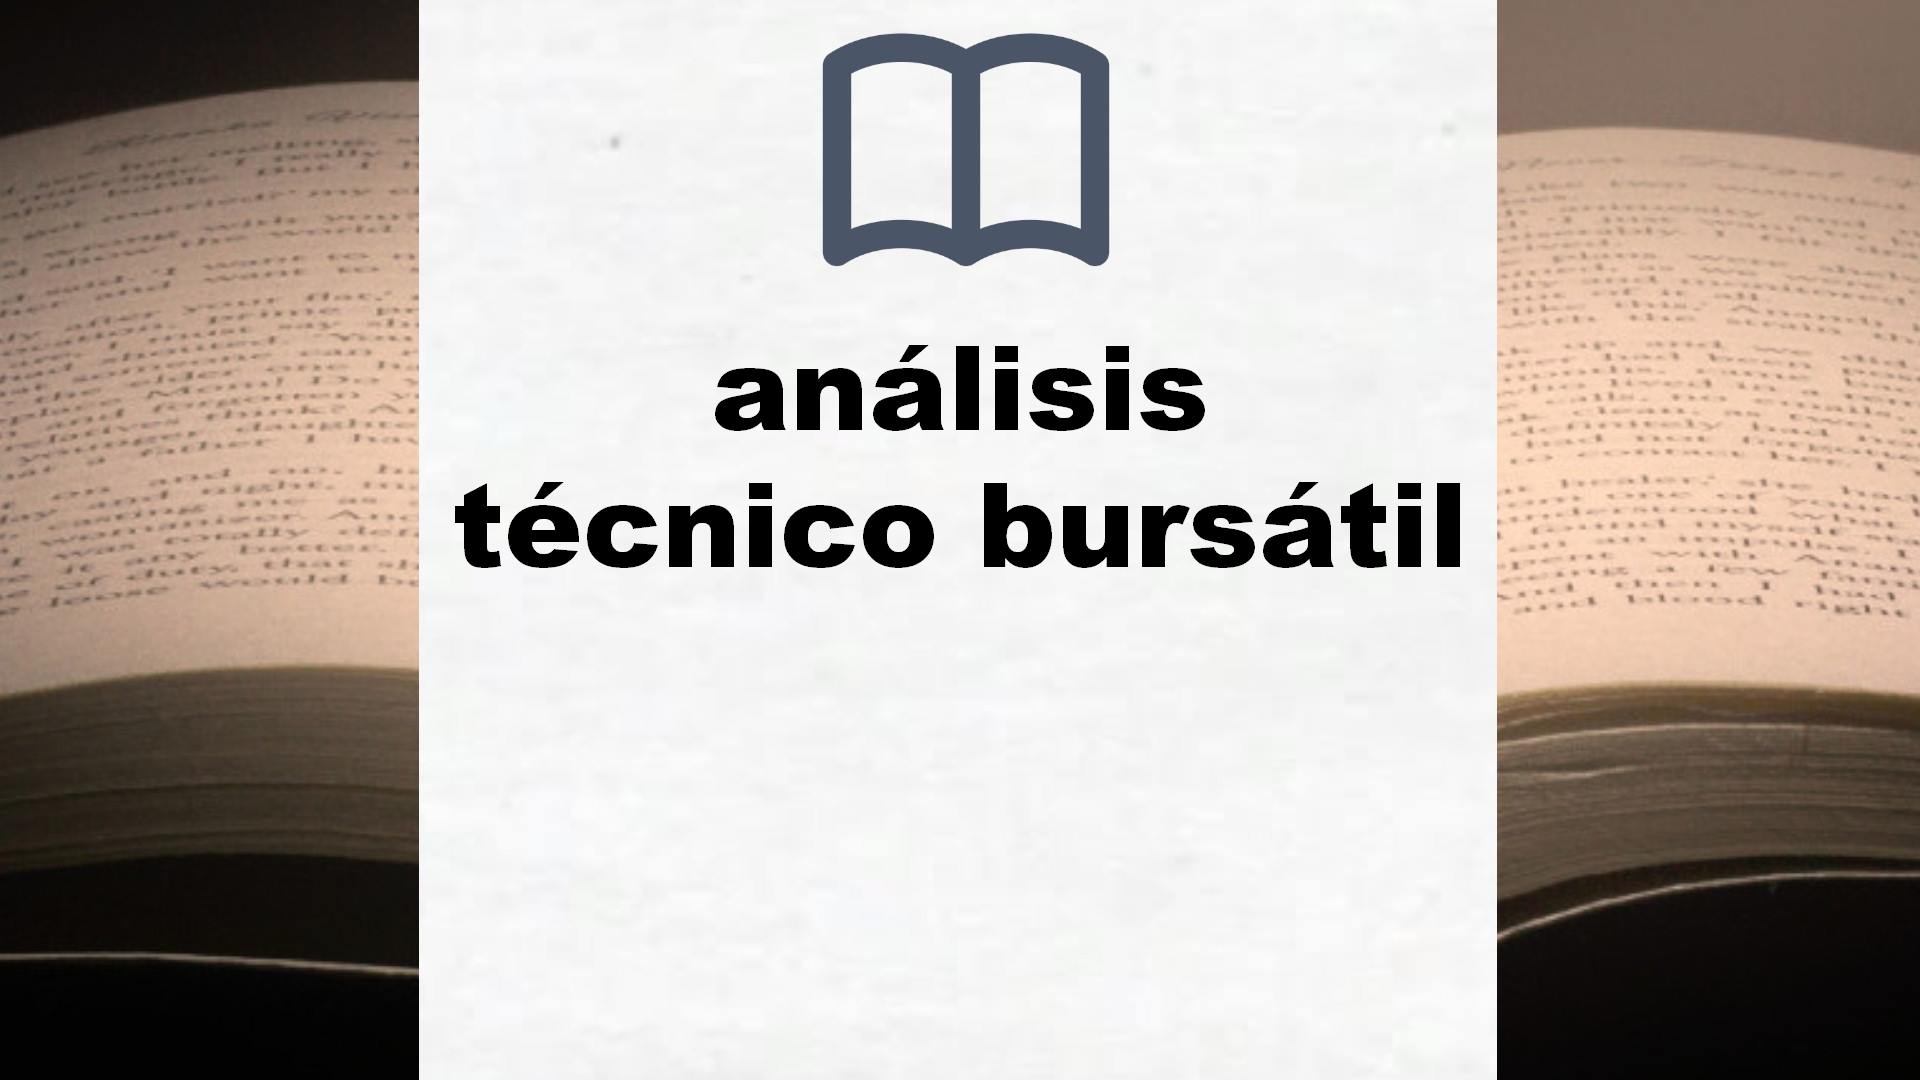 Libros sobre análisis técnico bursátil